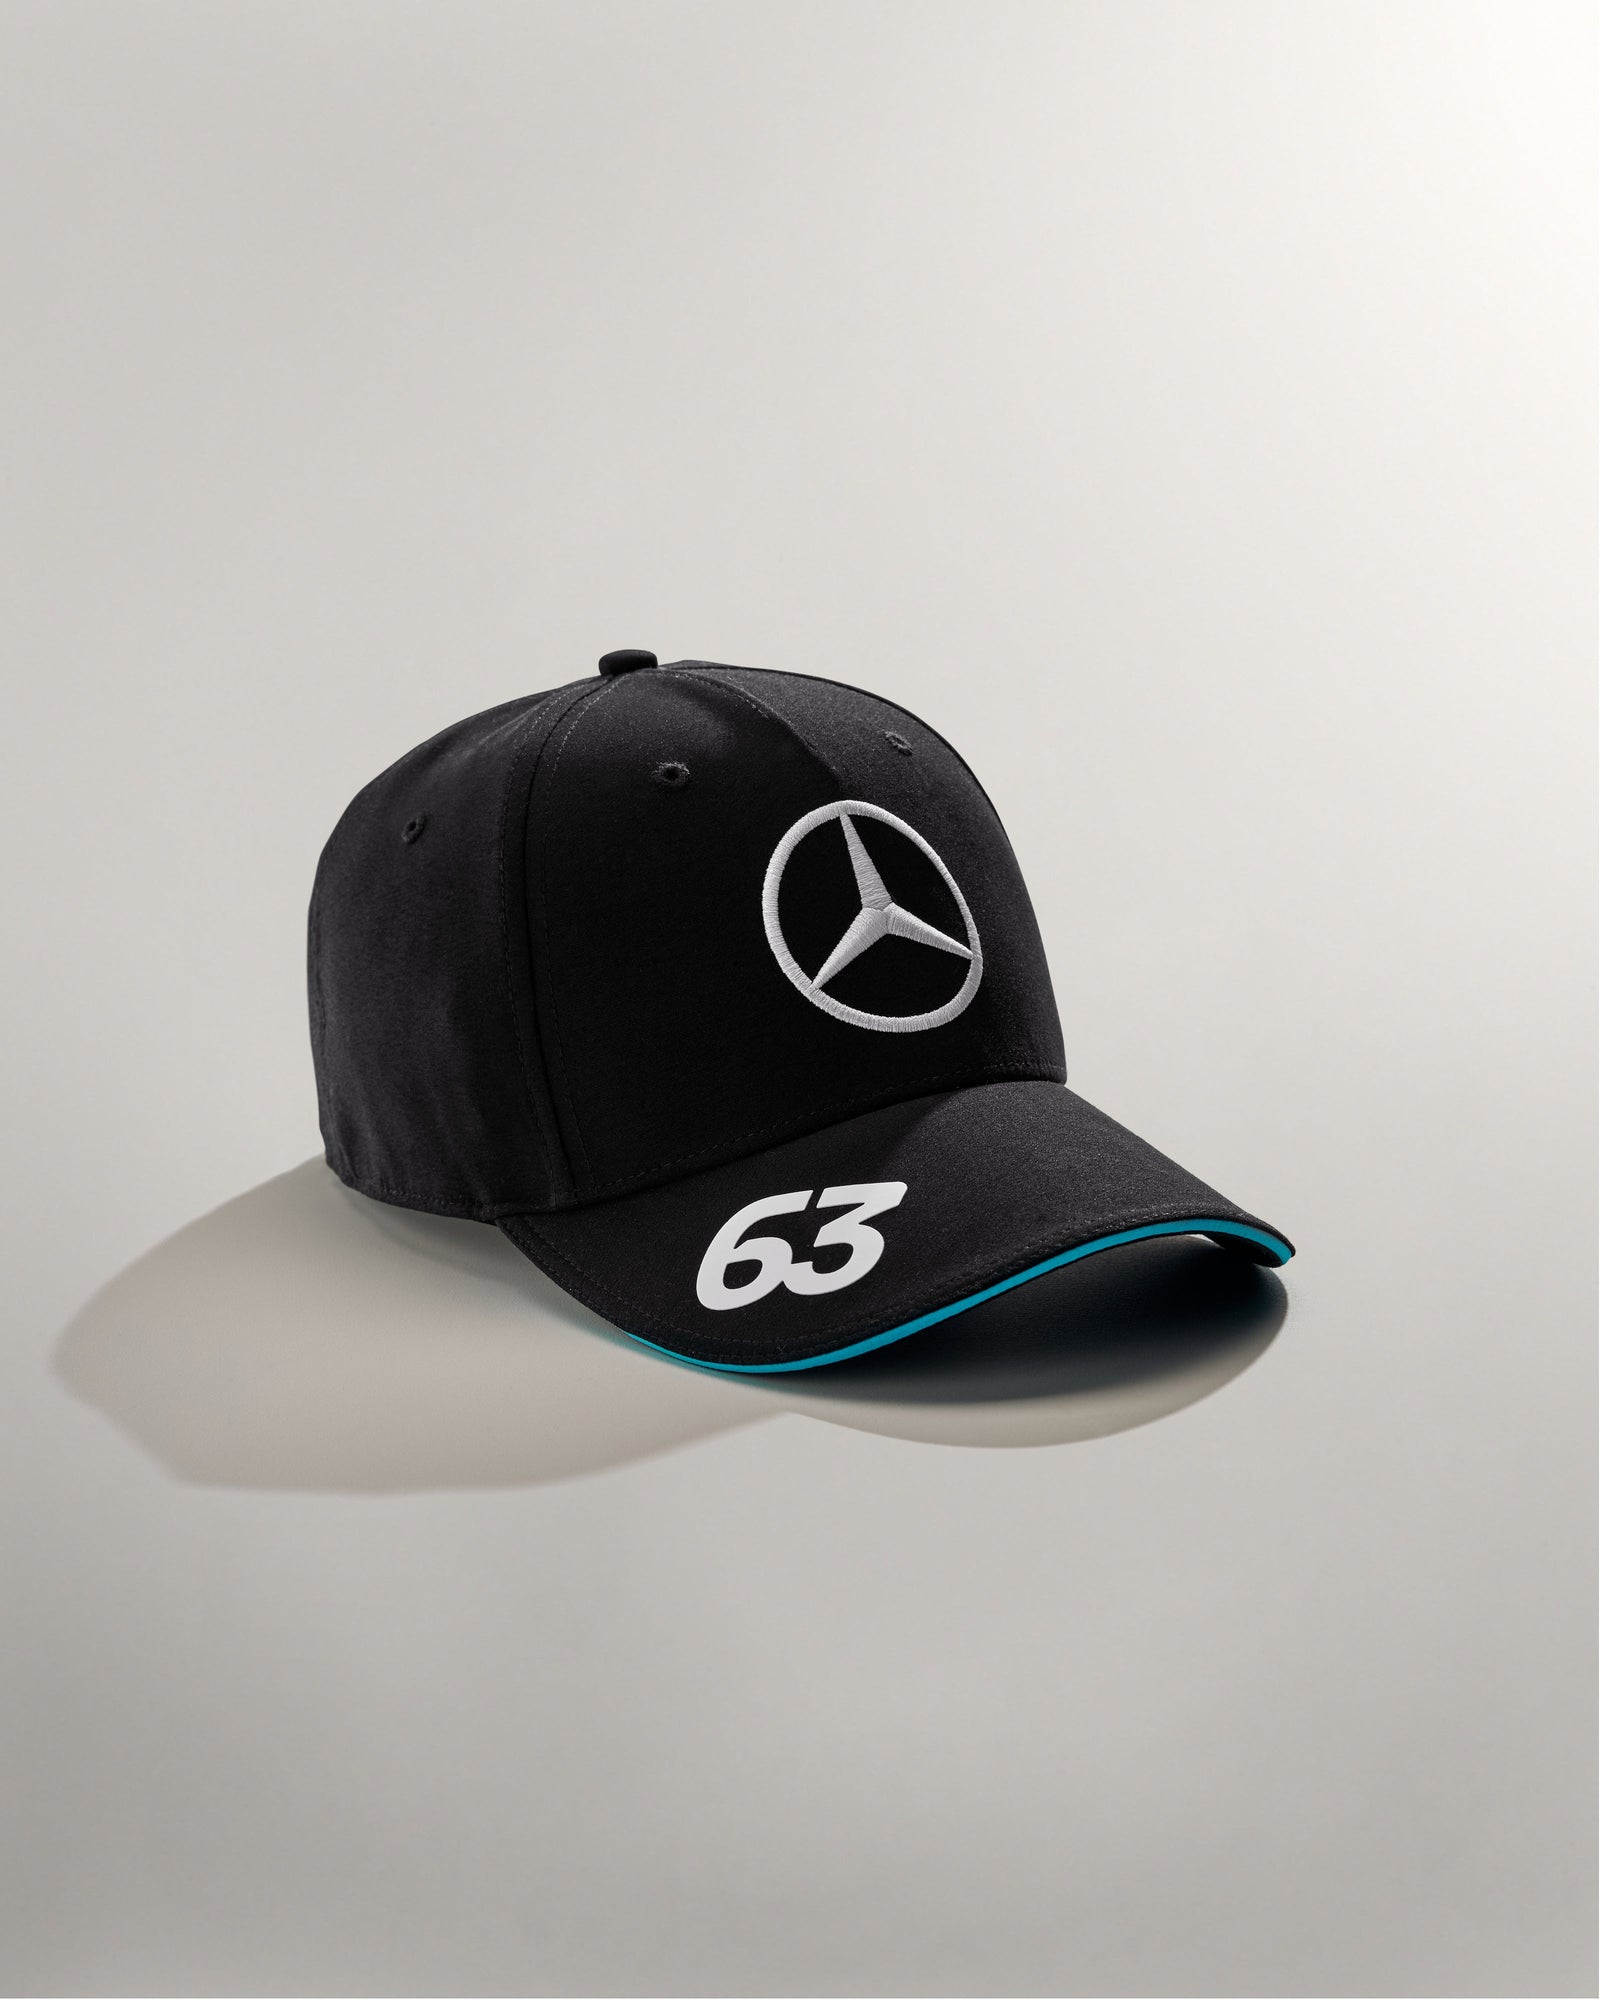 Mercedes F1 Team & Driver Caps  Official Mercedes-AMG F1 Store